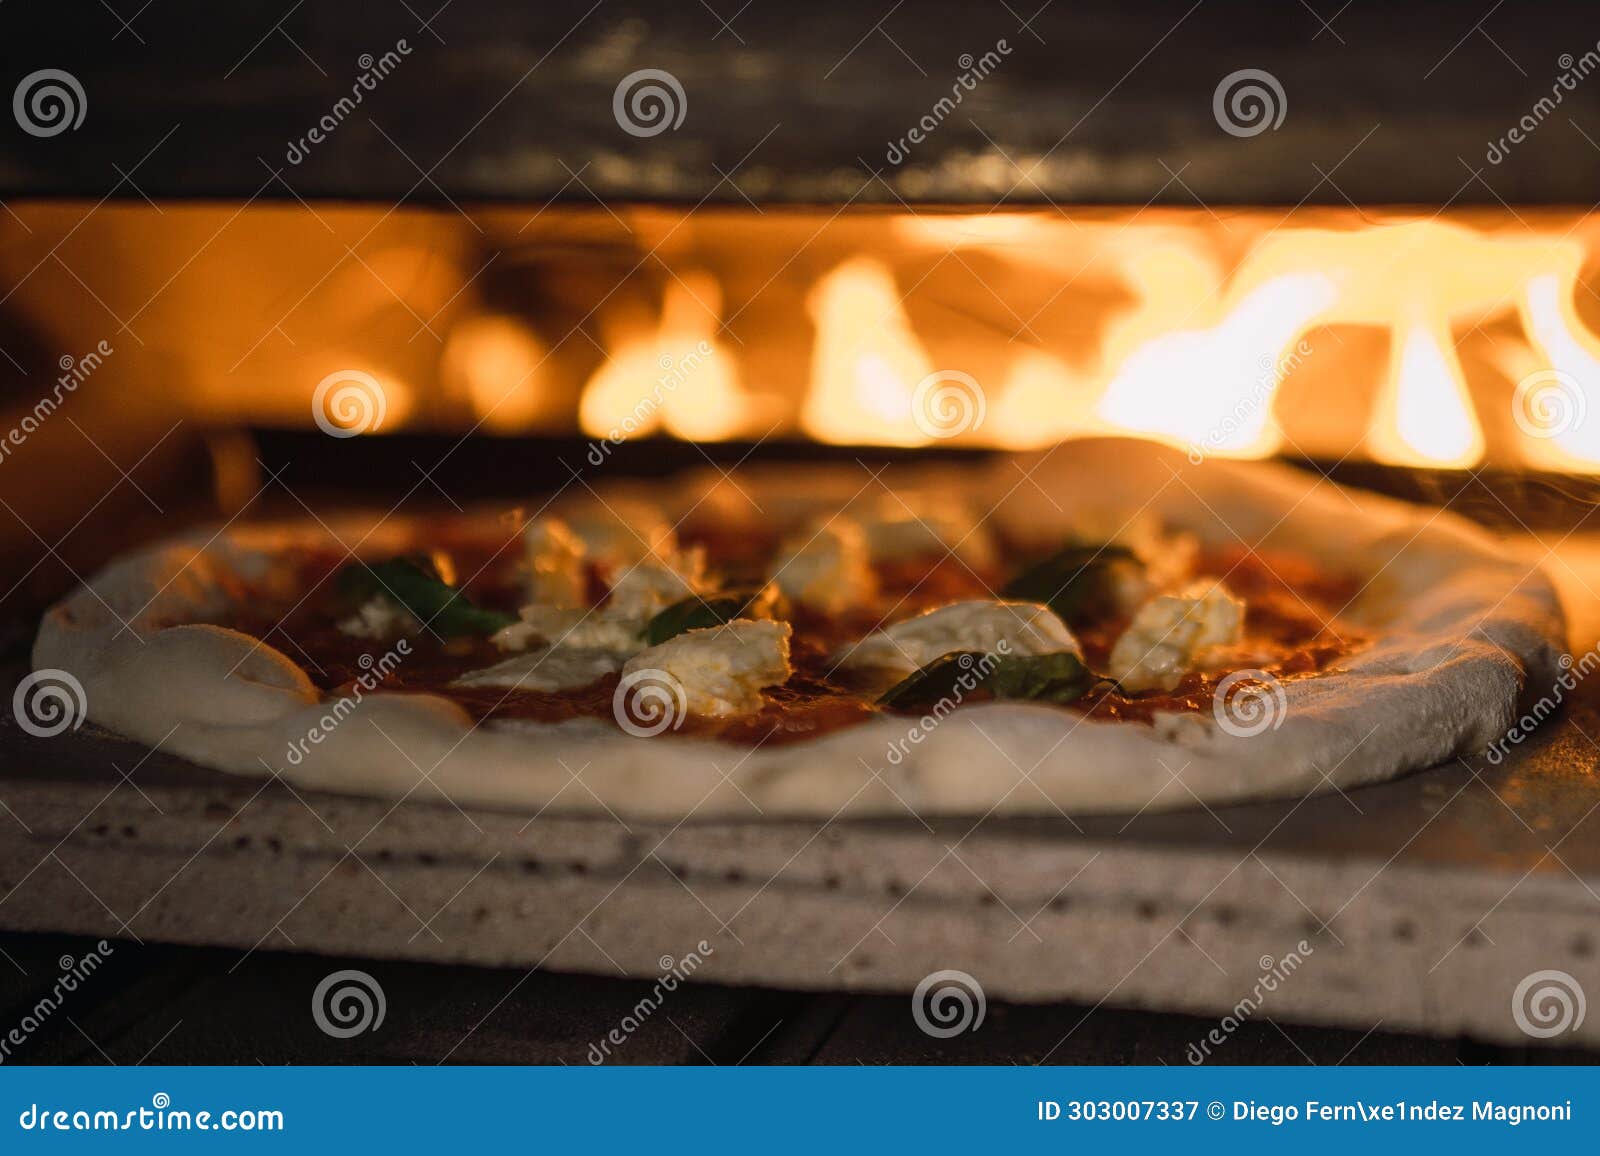 preparacion pizza